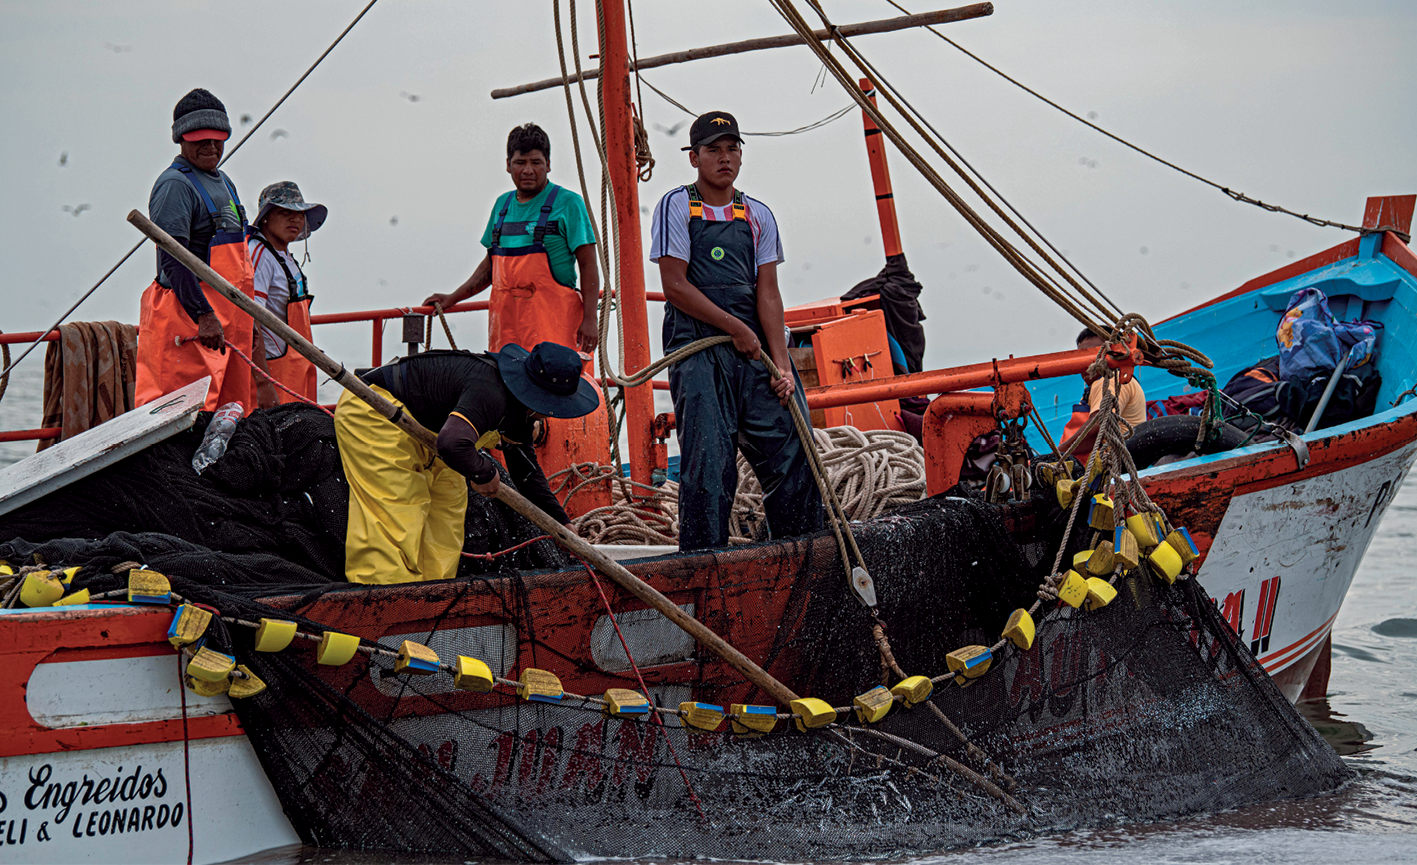 Fotografia. Fotografia de uma pequena embarcação de pesca com cinco tripulantes usando macacões azul, amarelo e laranja. Com o uso de uma haste grande, um tripulante manipula a rede na lateral do barco enquanto outro a segura com uma corda. Ao fundo, os outros três observam.